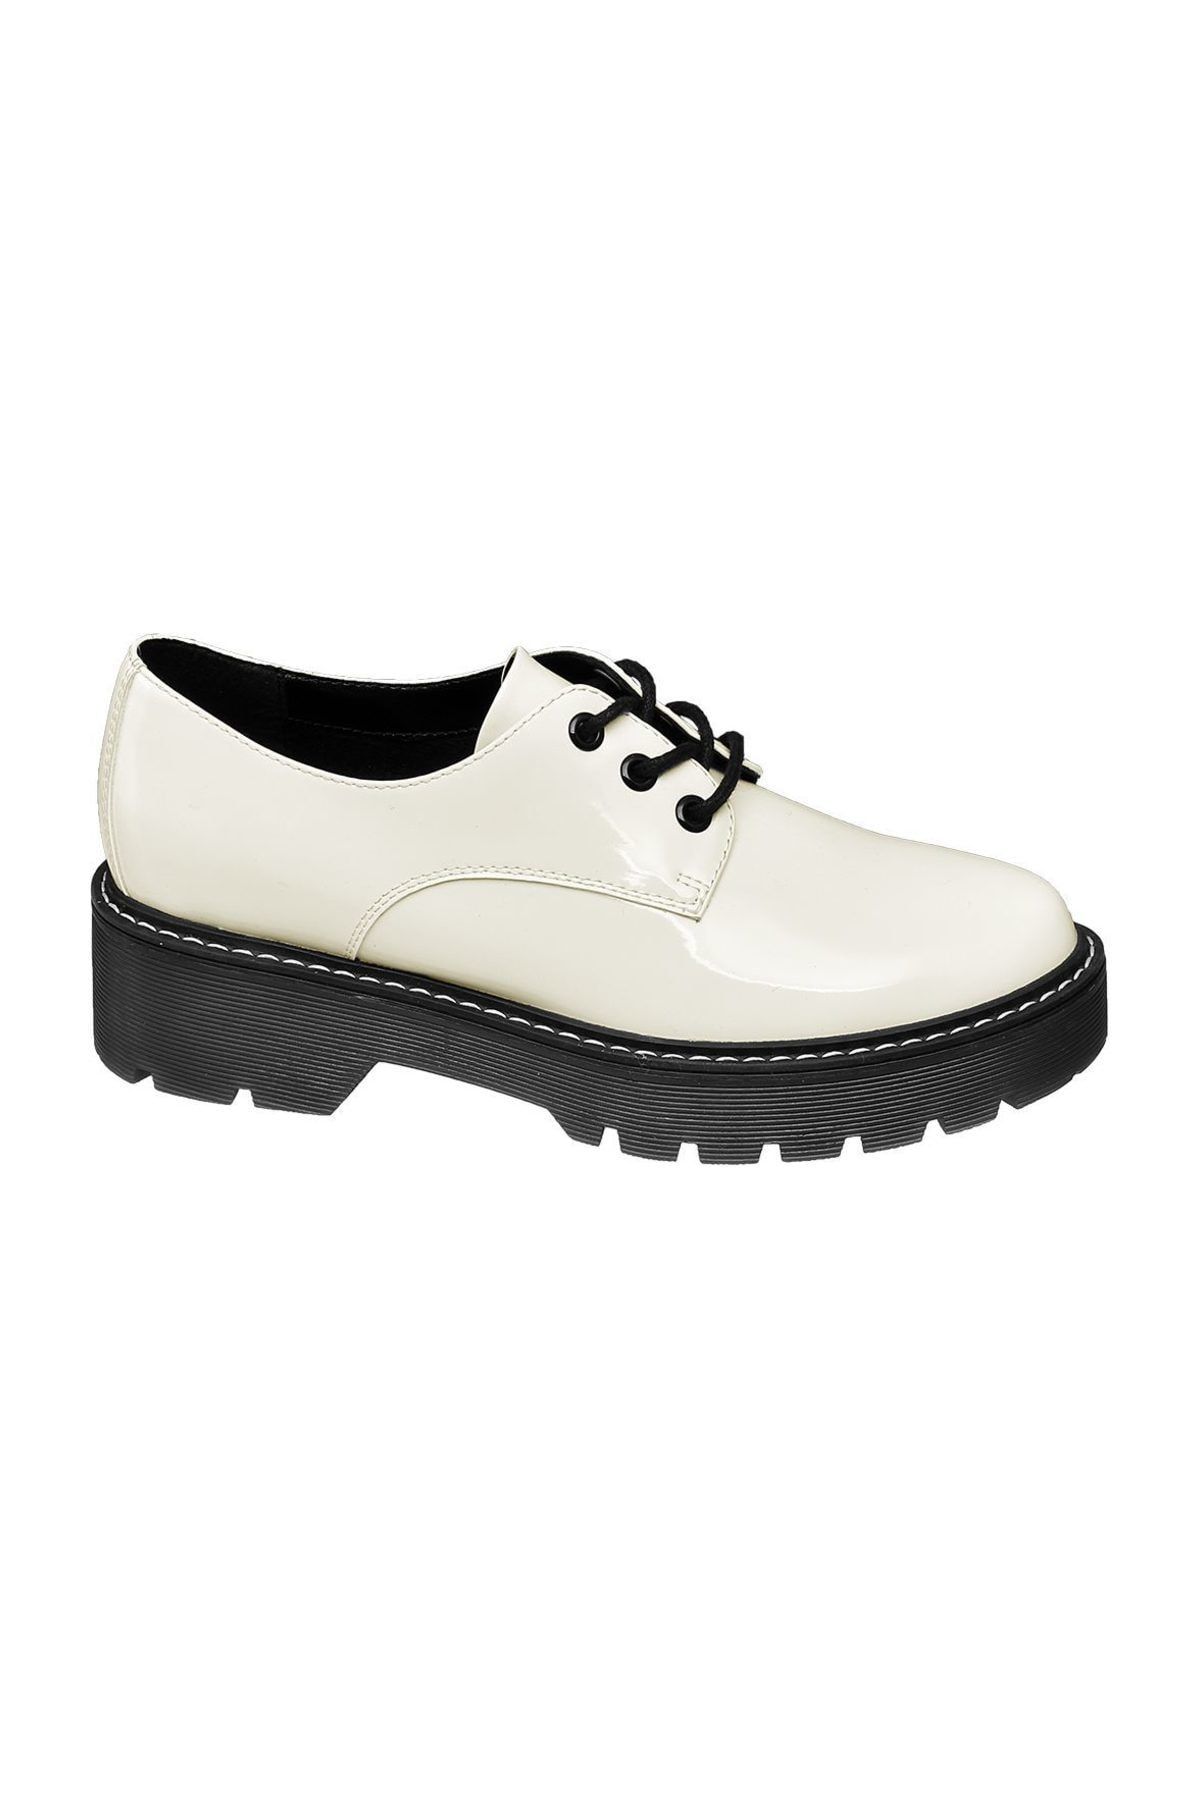 Catwalk Deichmann Beyaz Kadın Ayakkabı